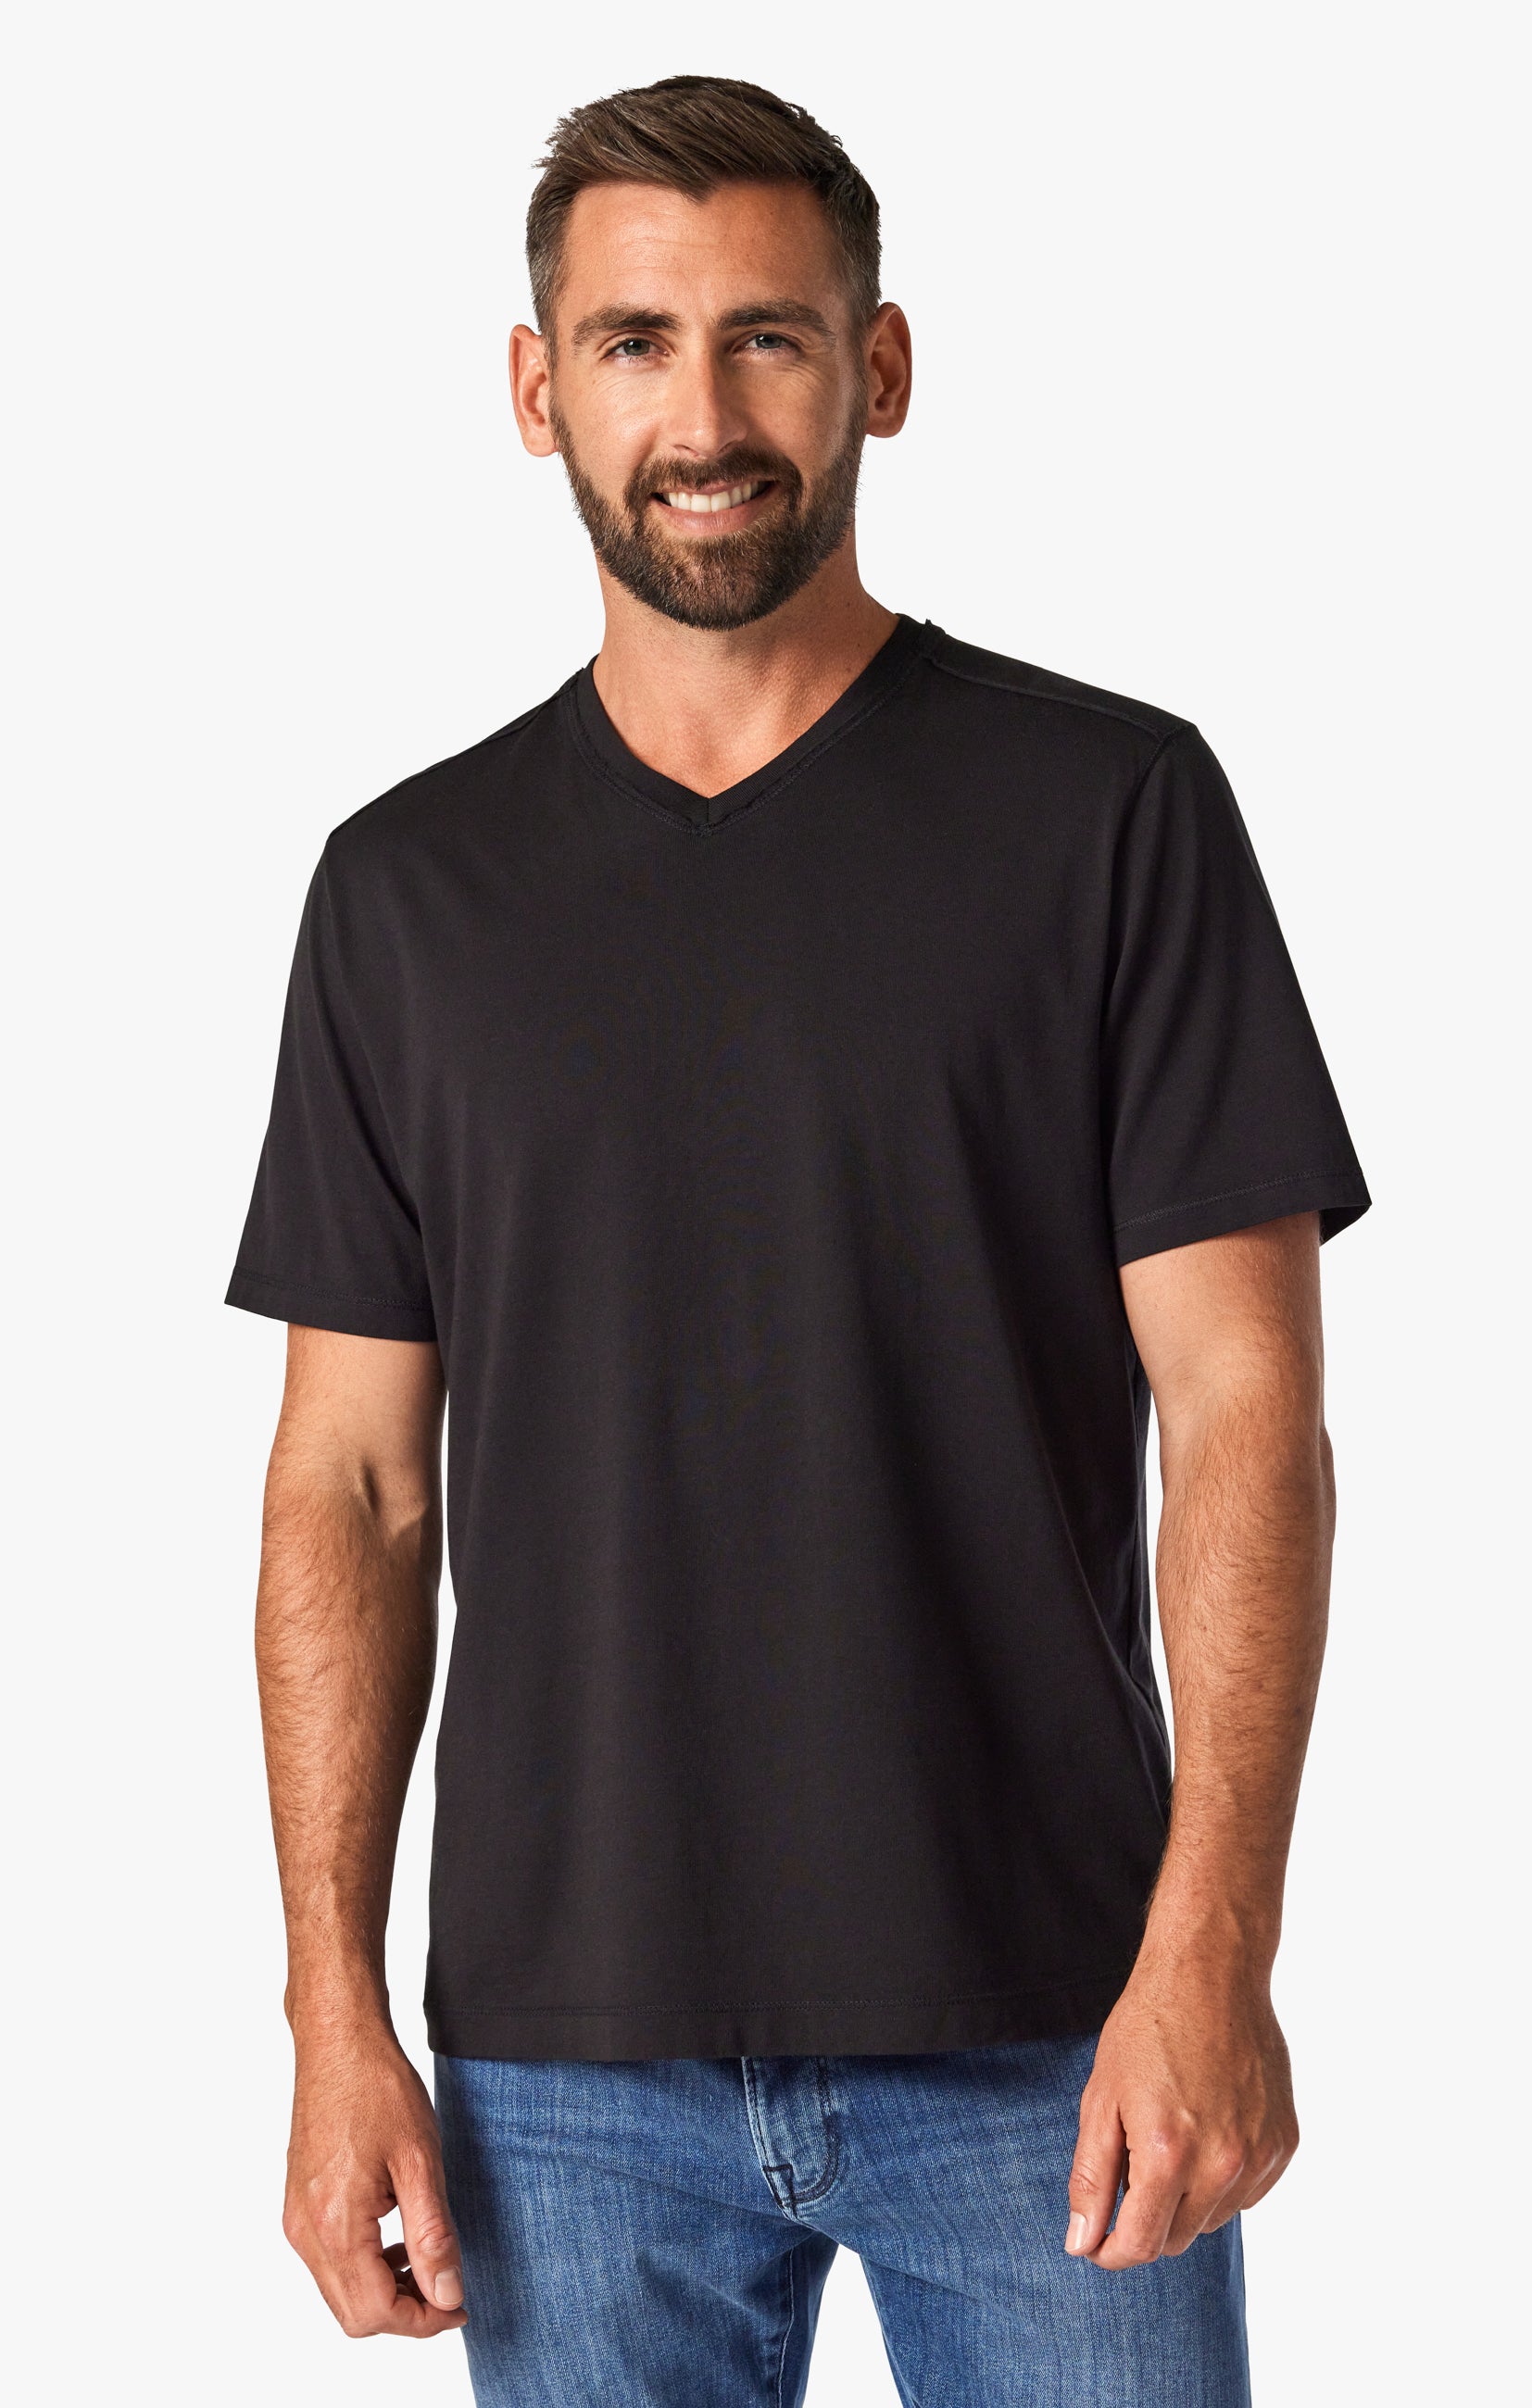 Deconstructed V-Neck T-Shirt in Black Image 1